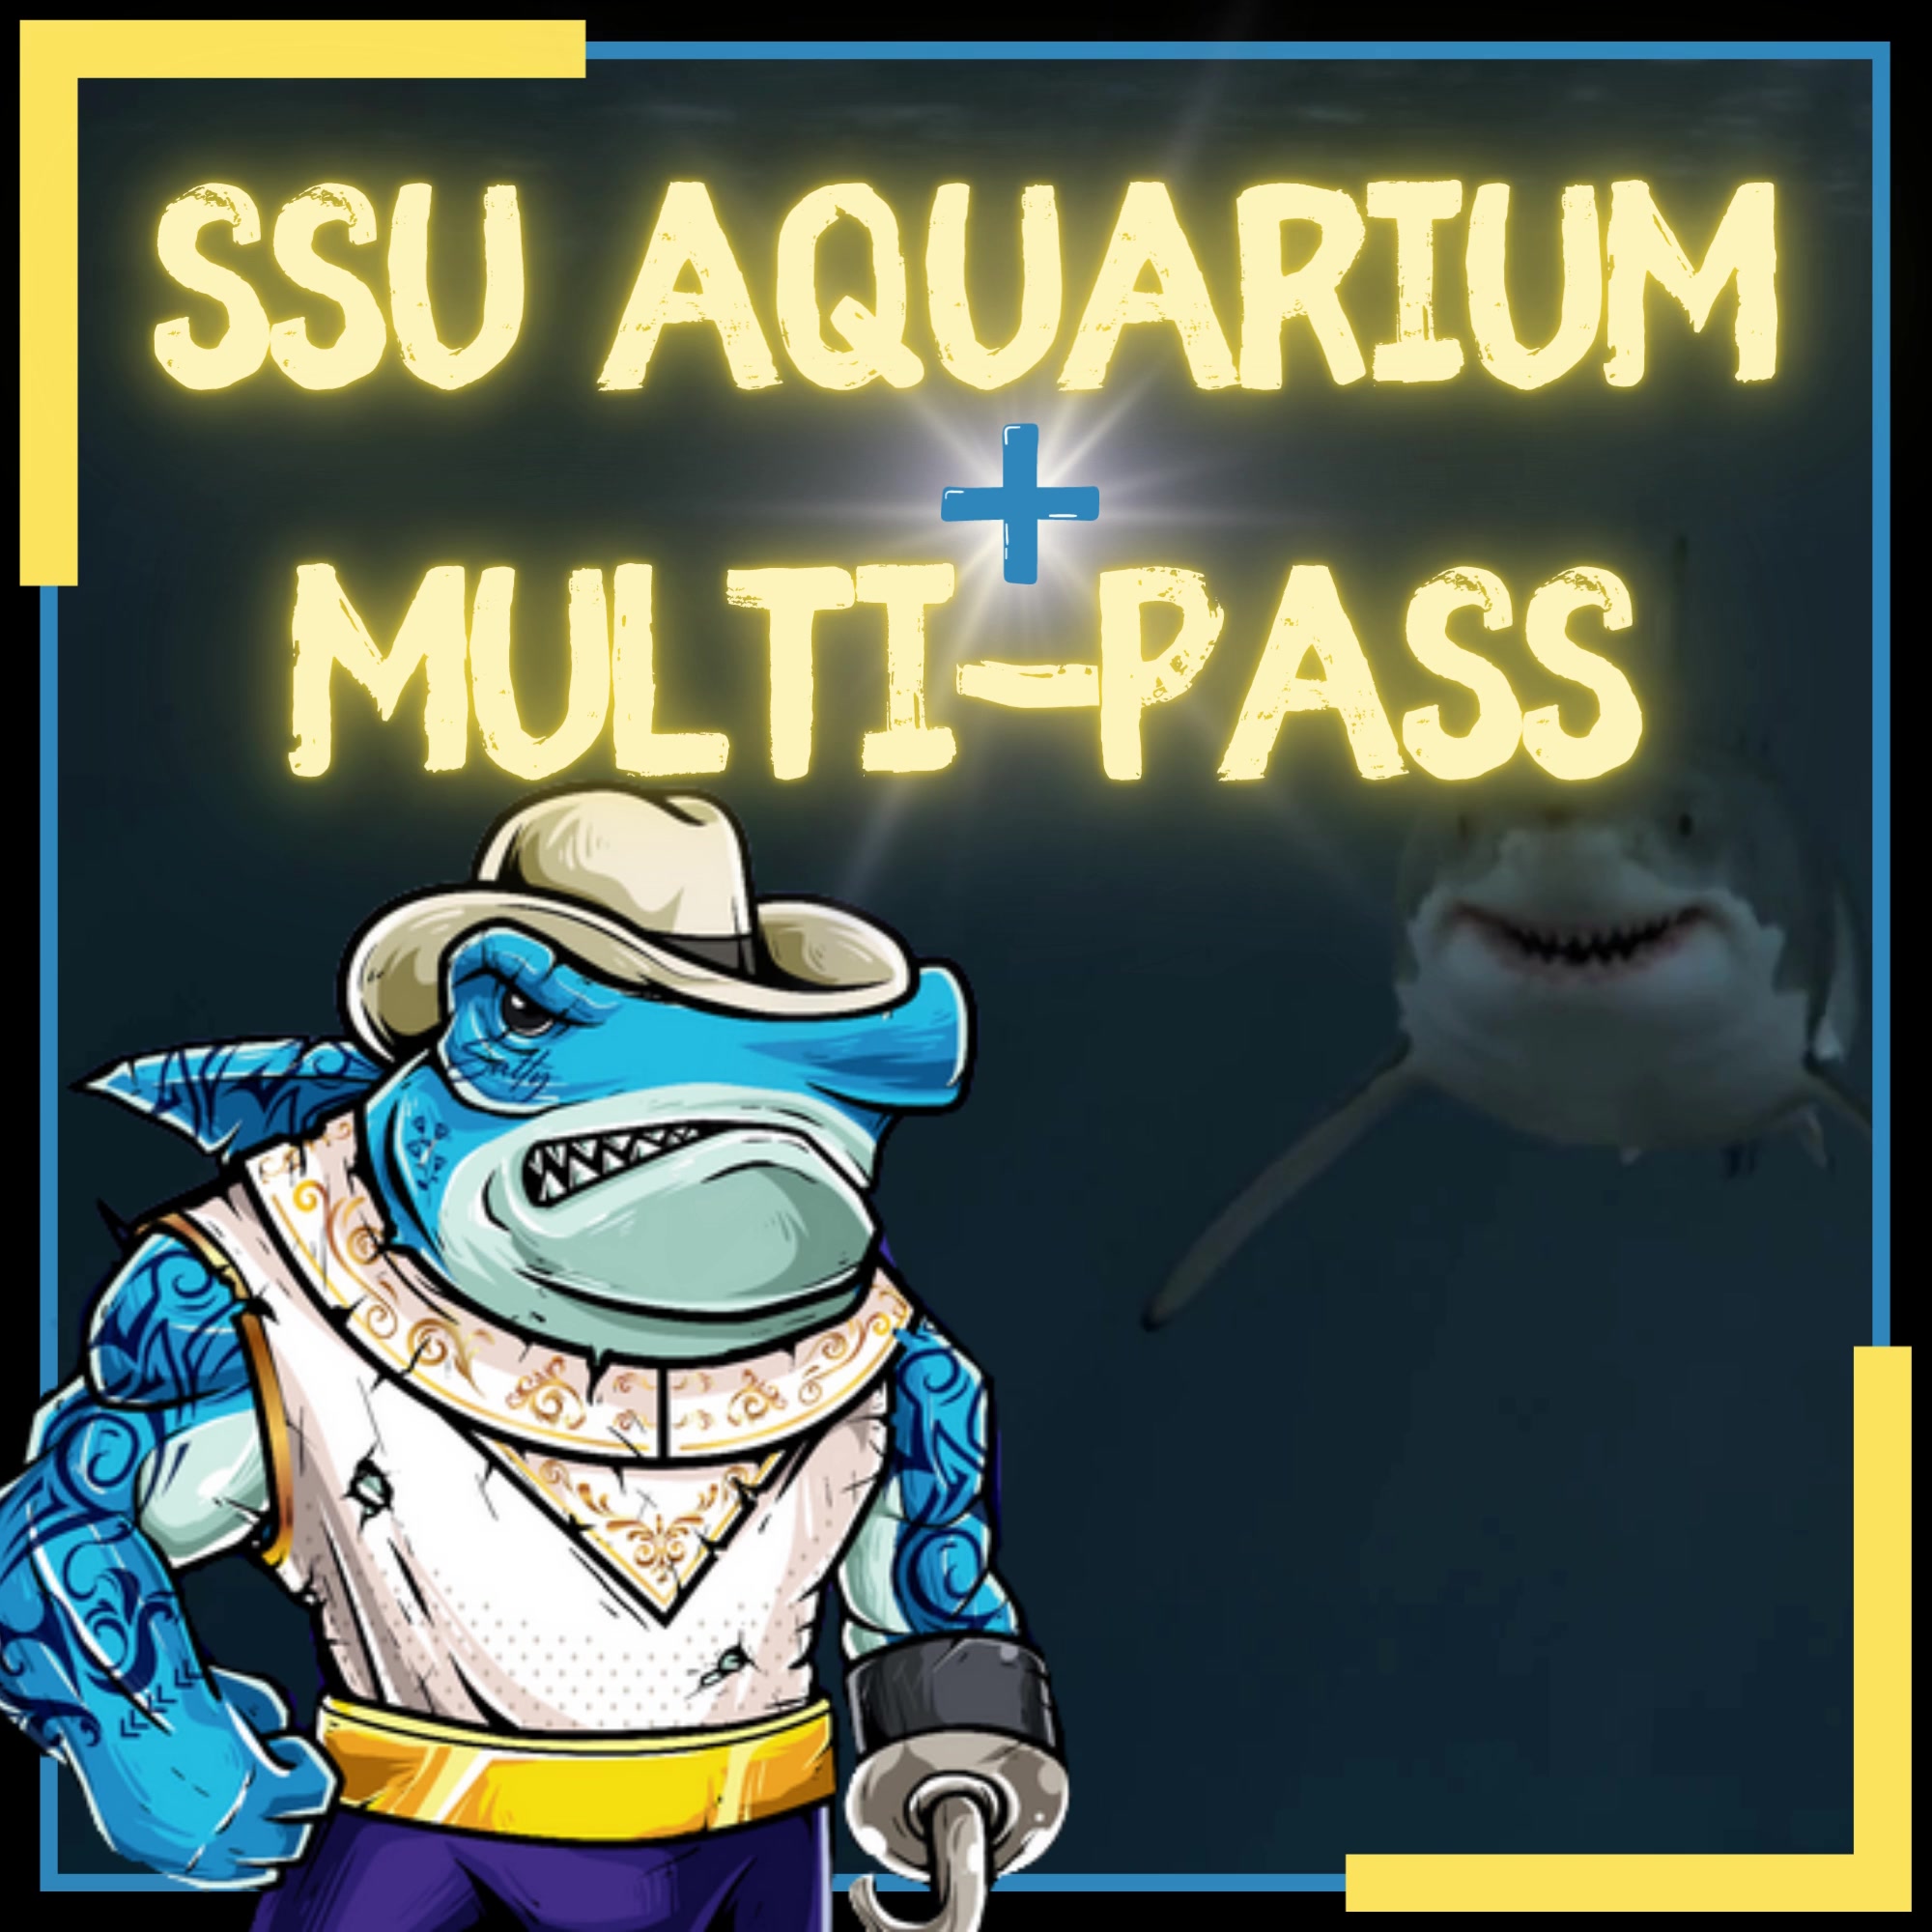 Aquarium Multipass